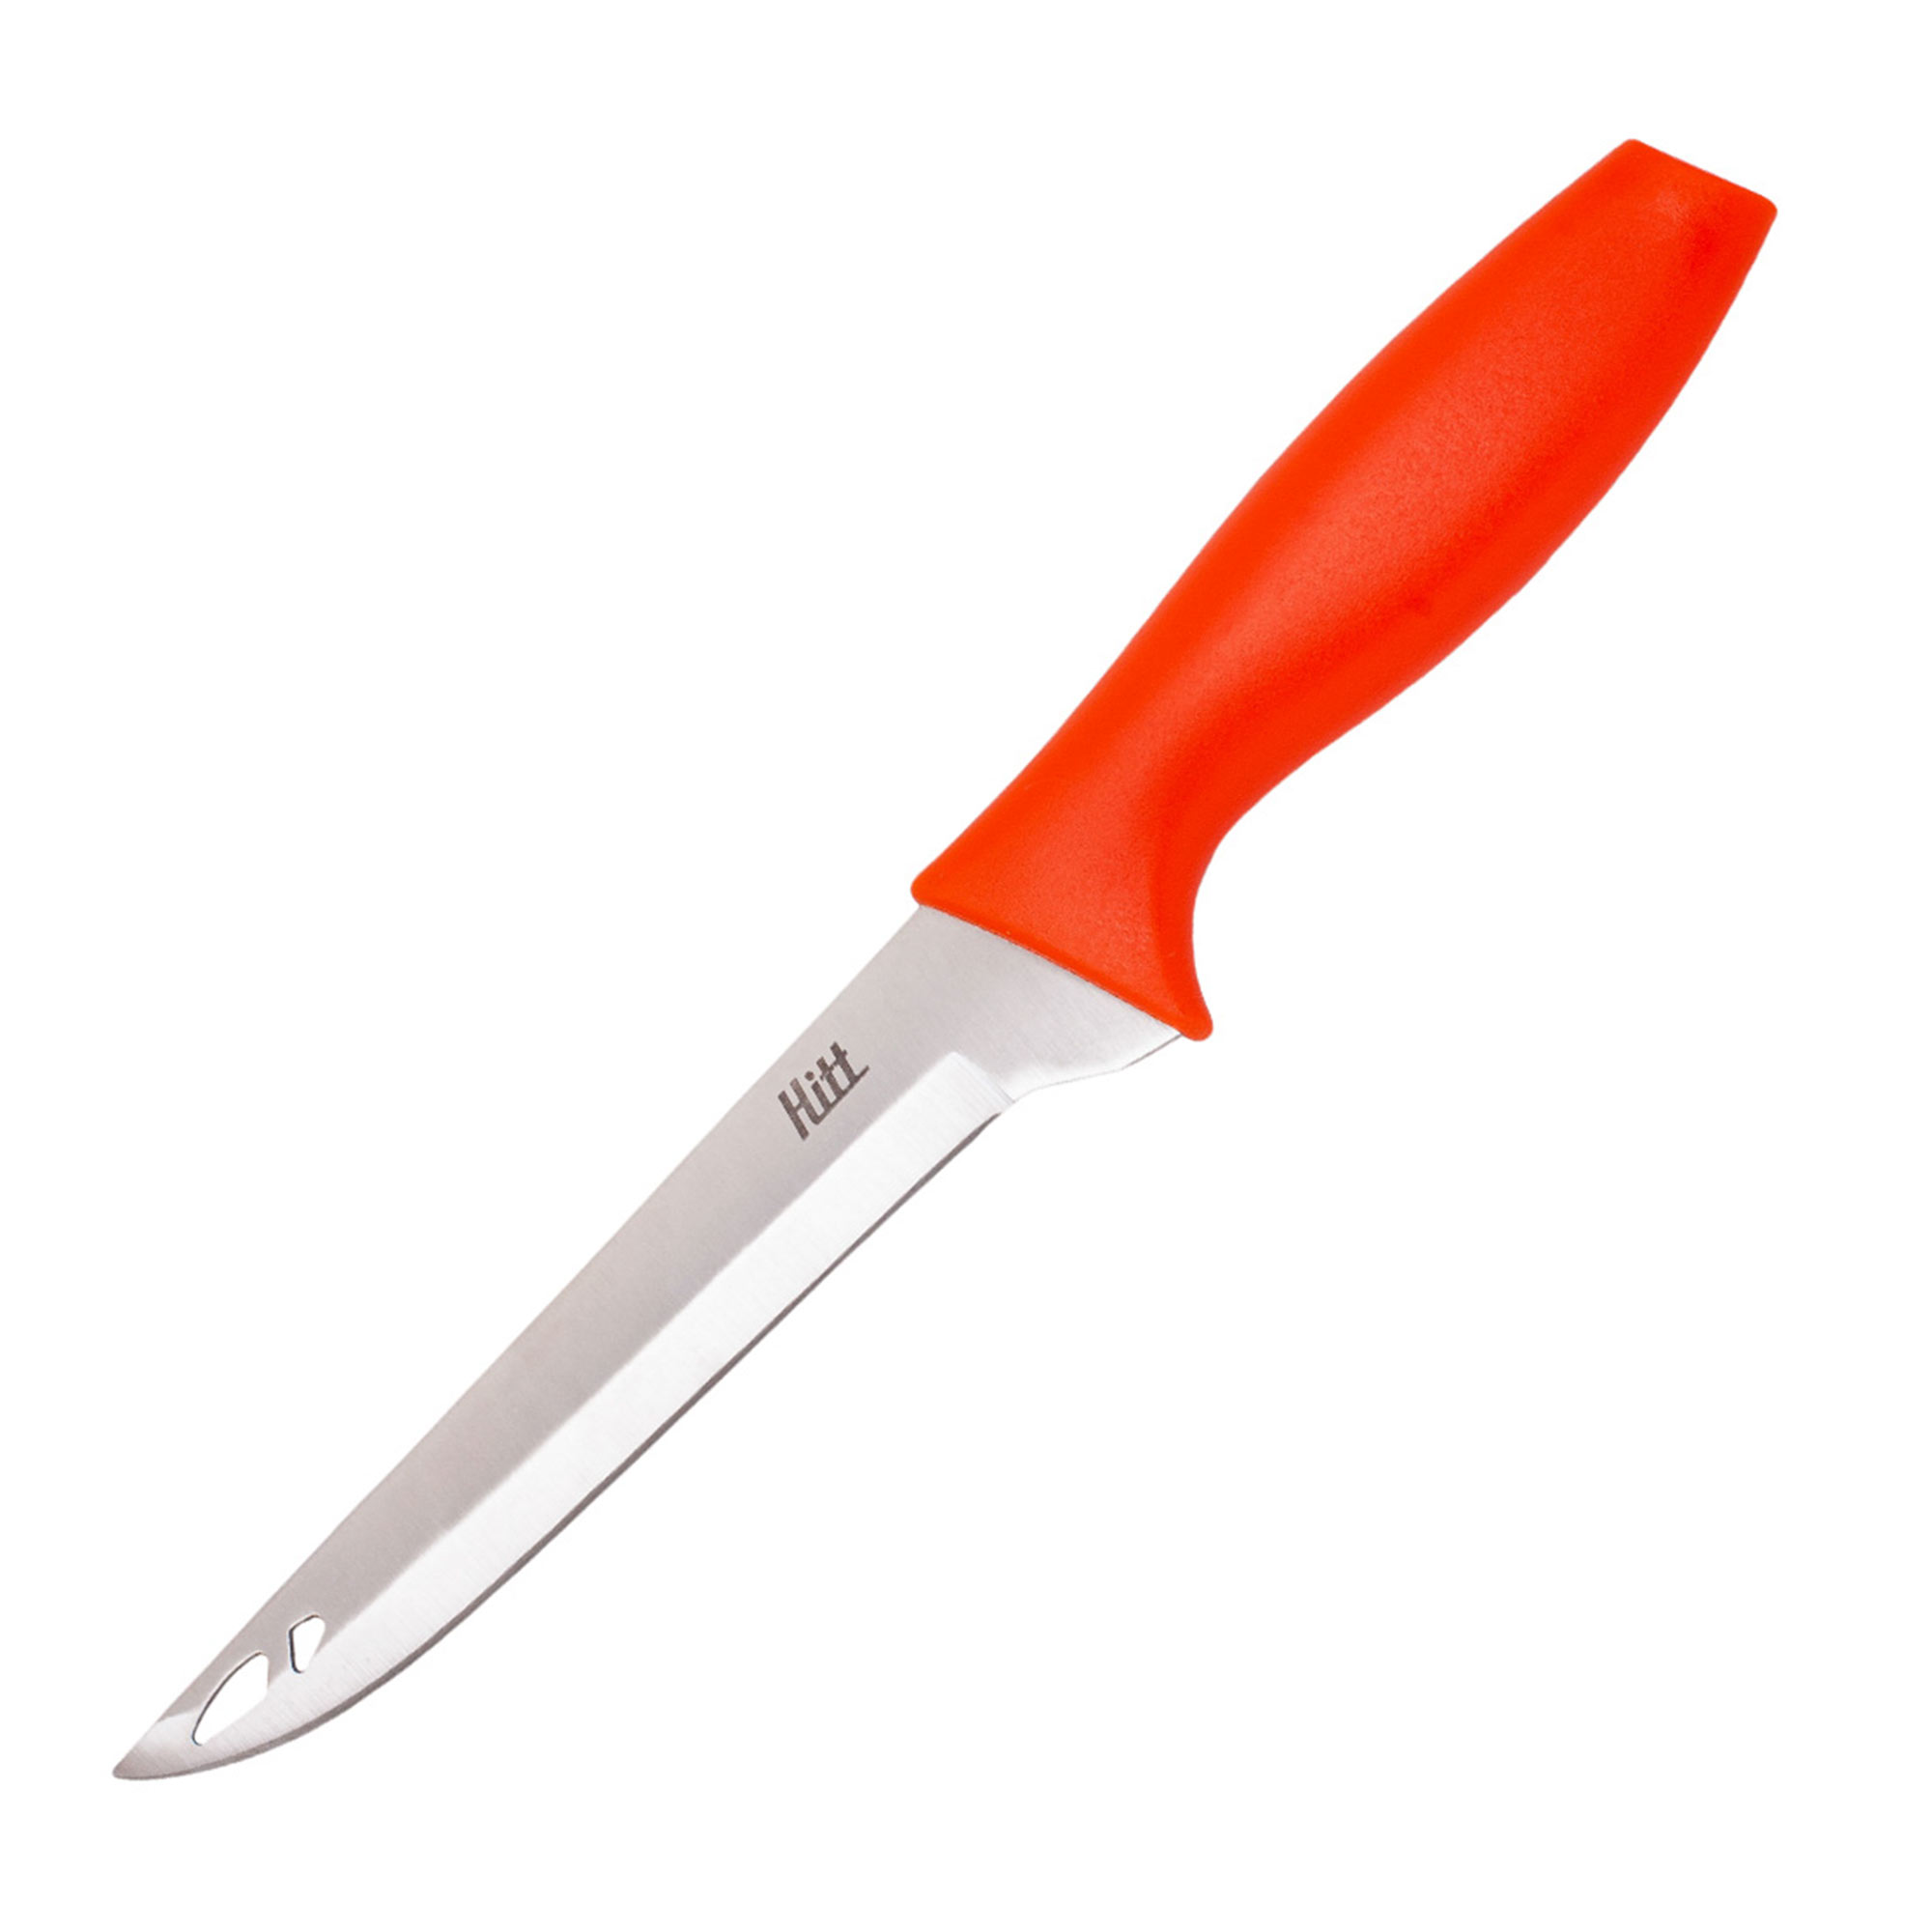 Нож Hitt Colorfest филейный 15 см нож консервный colorfest hitt спелый апельсин